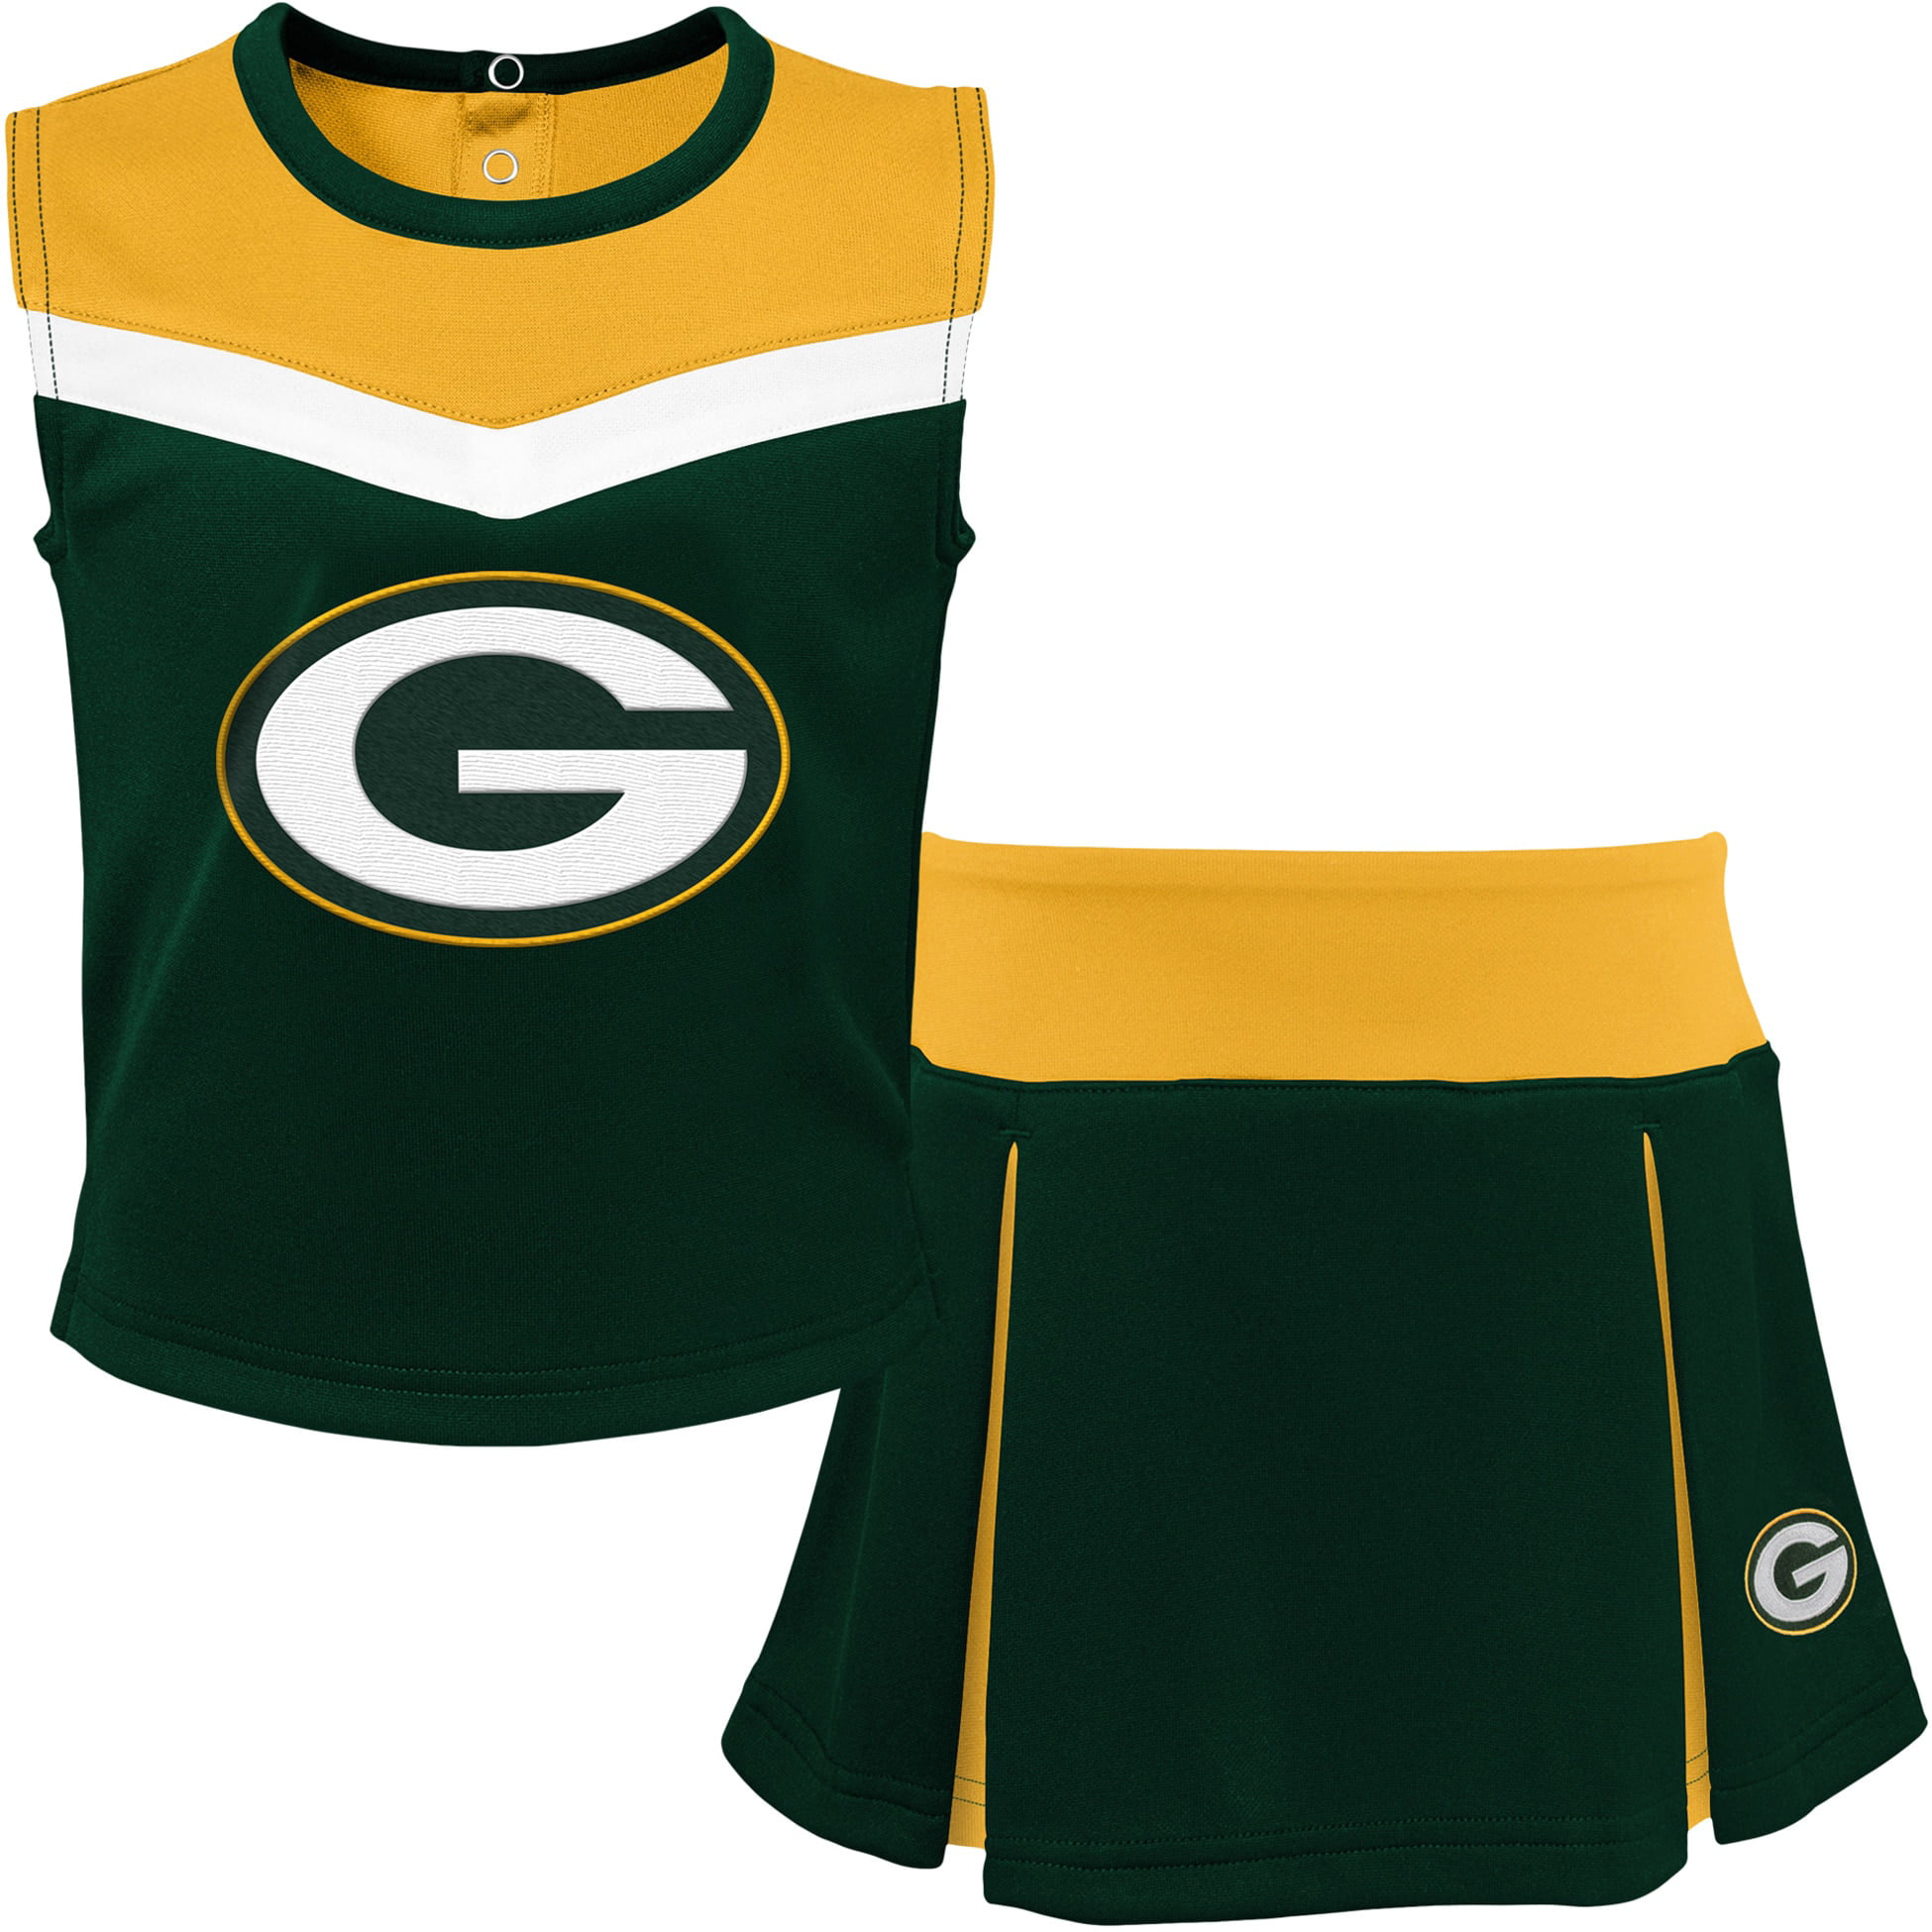 Esteem Athletic Adult Boy Cut Brief-Gold-XL-Cheerleading Uniform/Bloomers B 16 